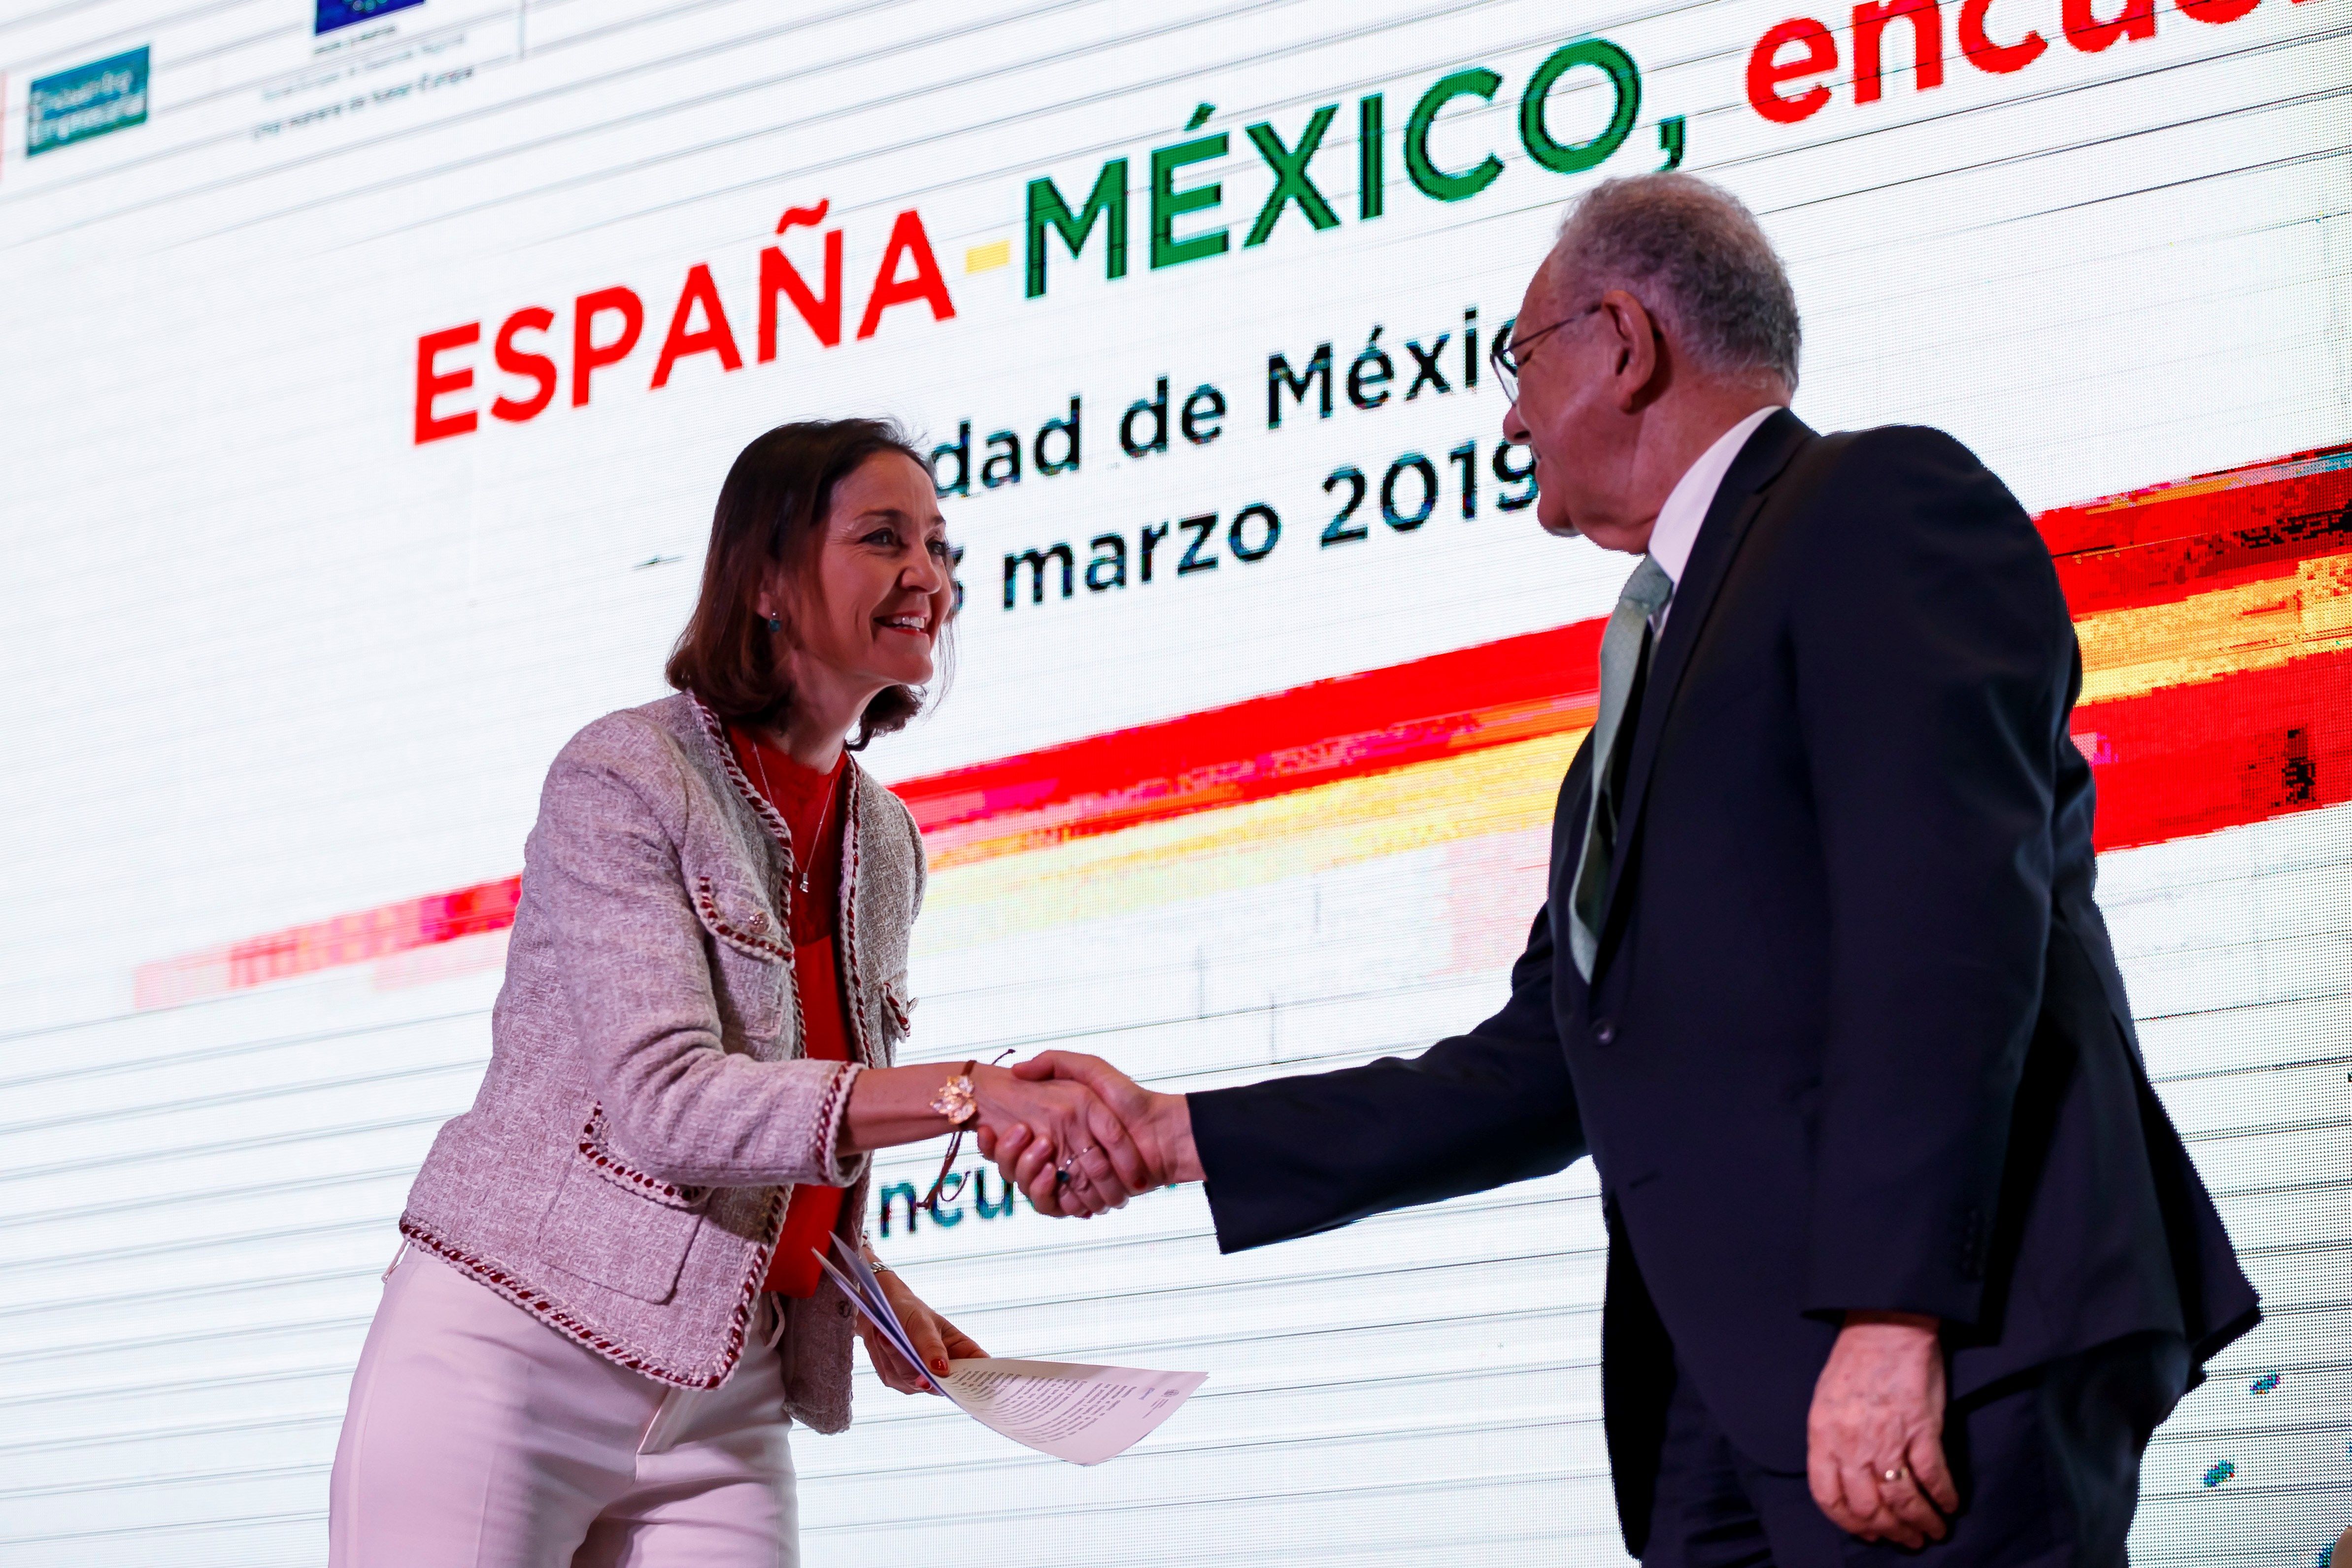  México garantizará seguridad pública para favorecer inversión española